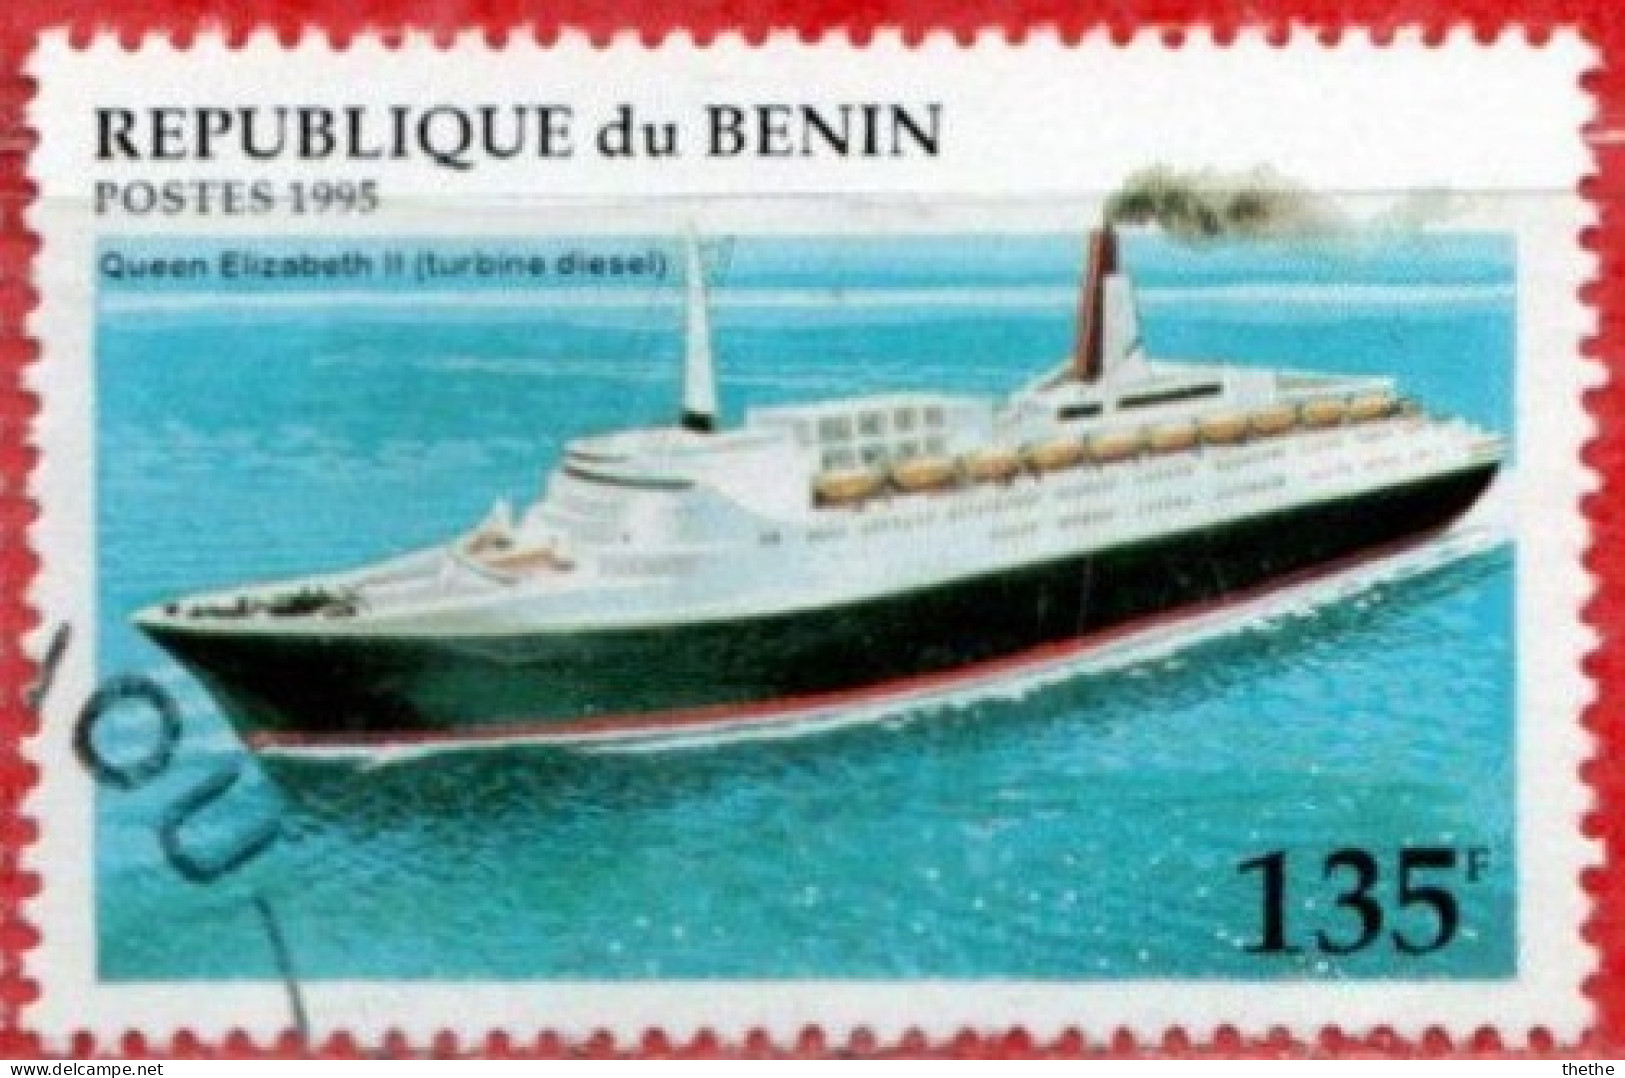 BENIN - Queen Elisabeth II (turbine Diesel) - Schiffe